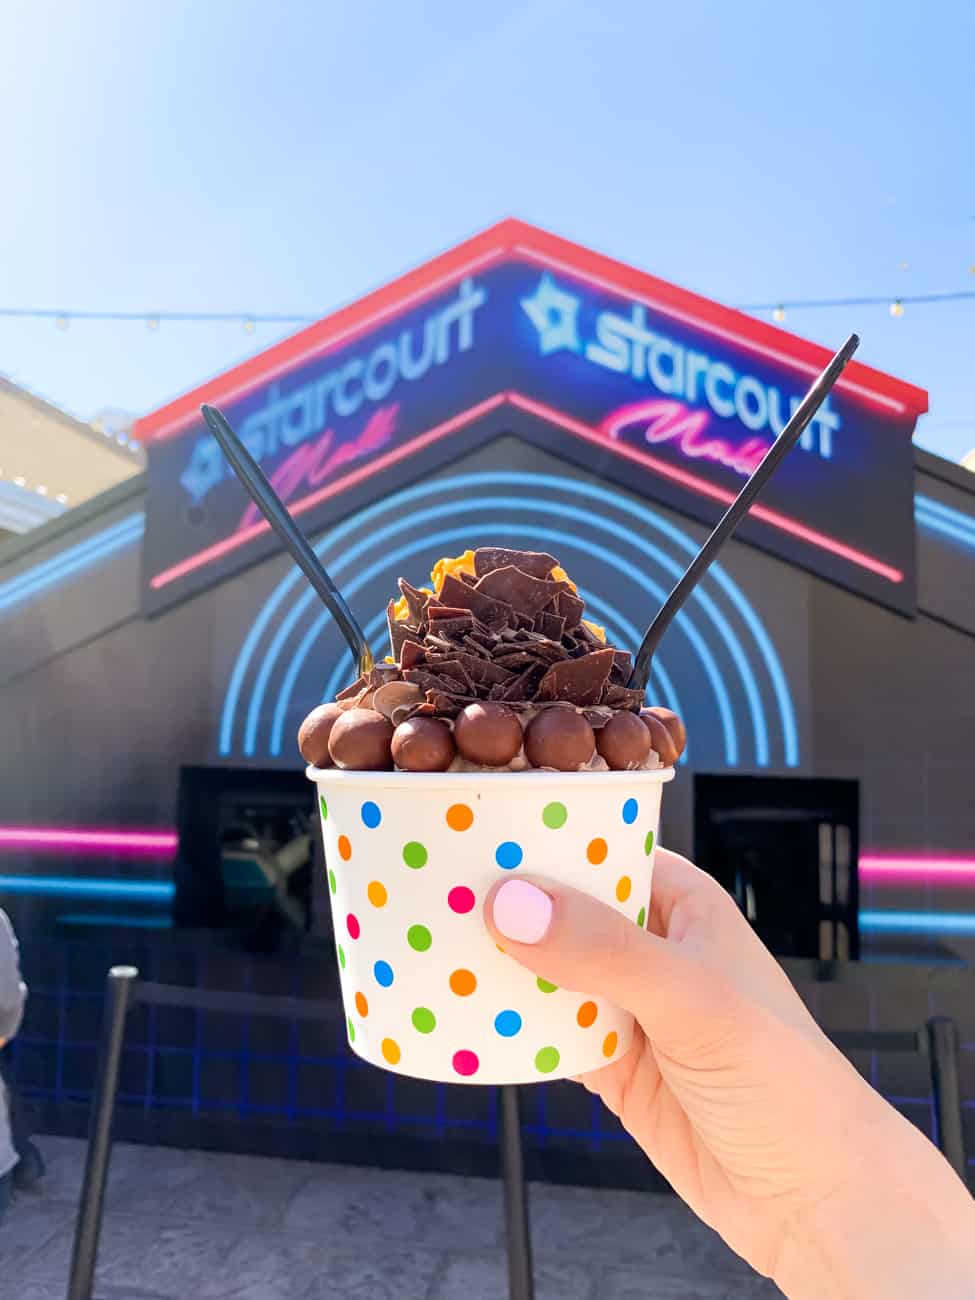 Universal studios scoops ahoy ice cream treat